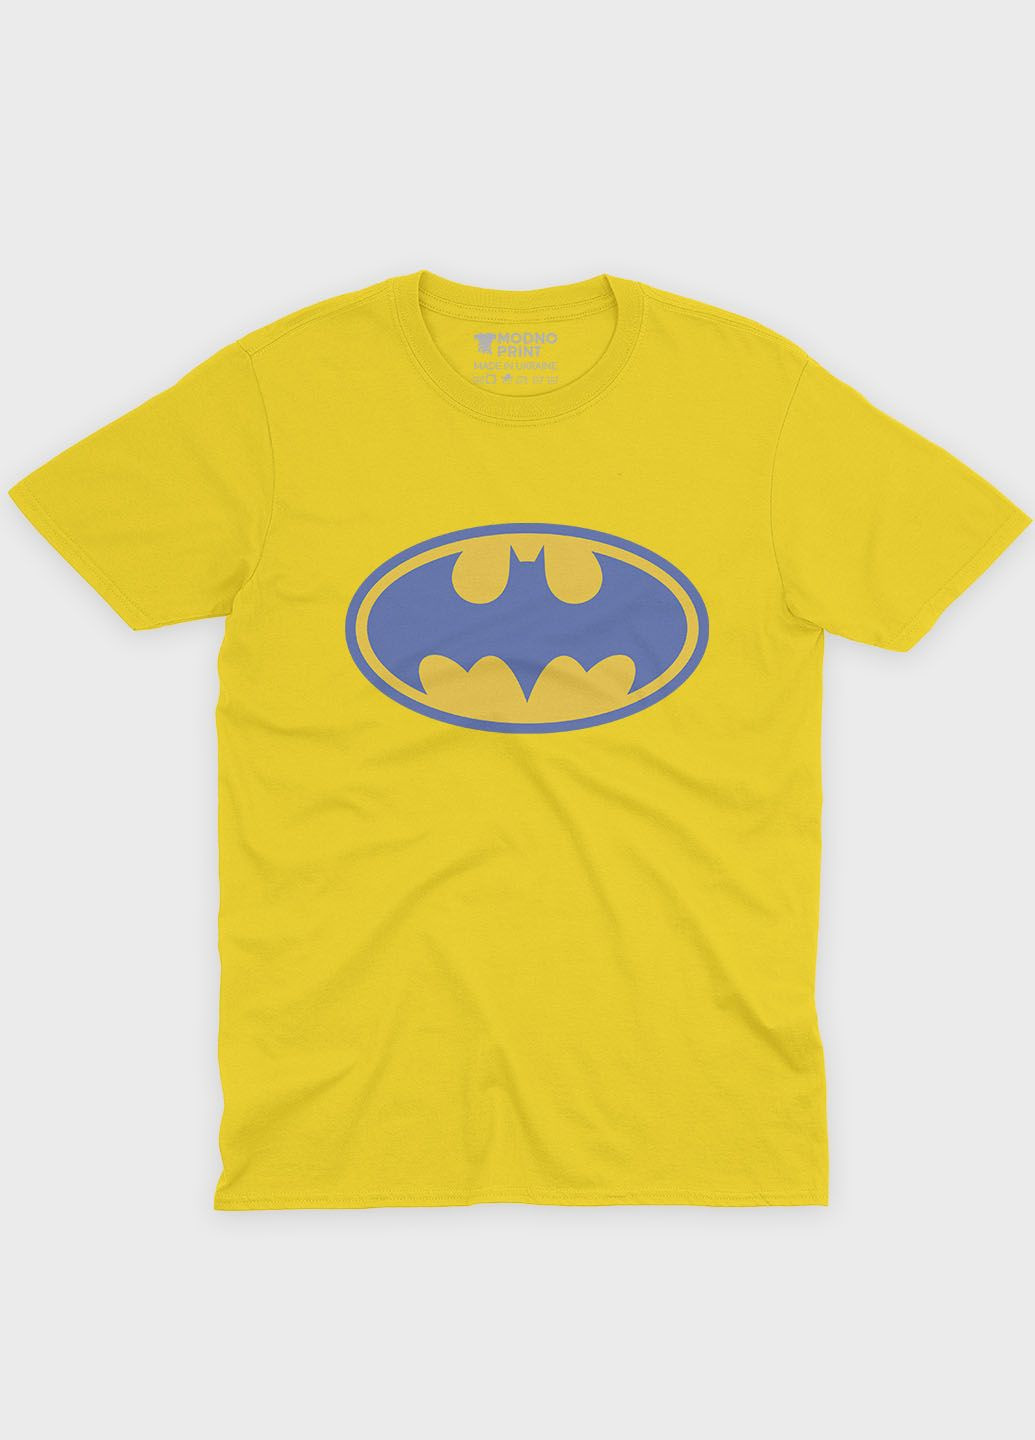 Жовта демісезонна футболка для дівчинки з патріотичним принтом (ts001-3-sun-005-1-061-g) Modno